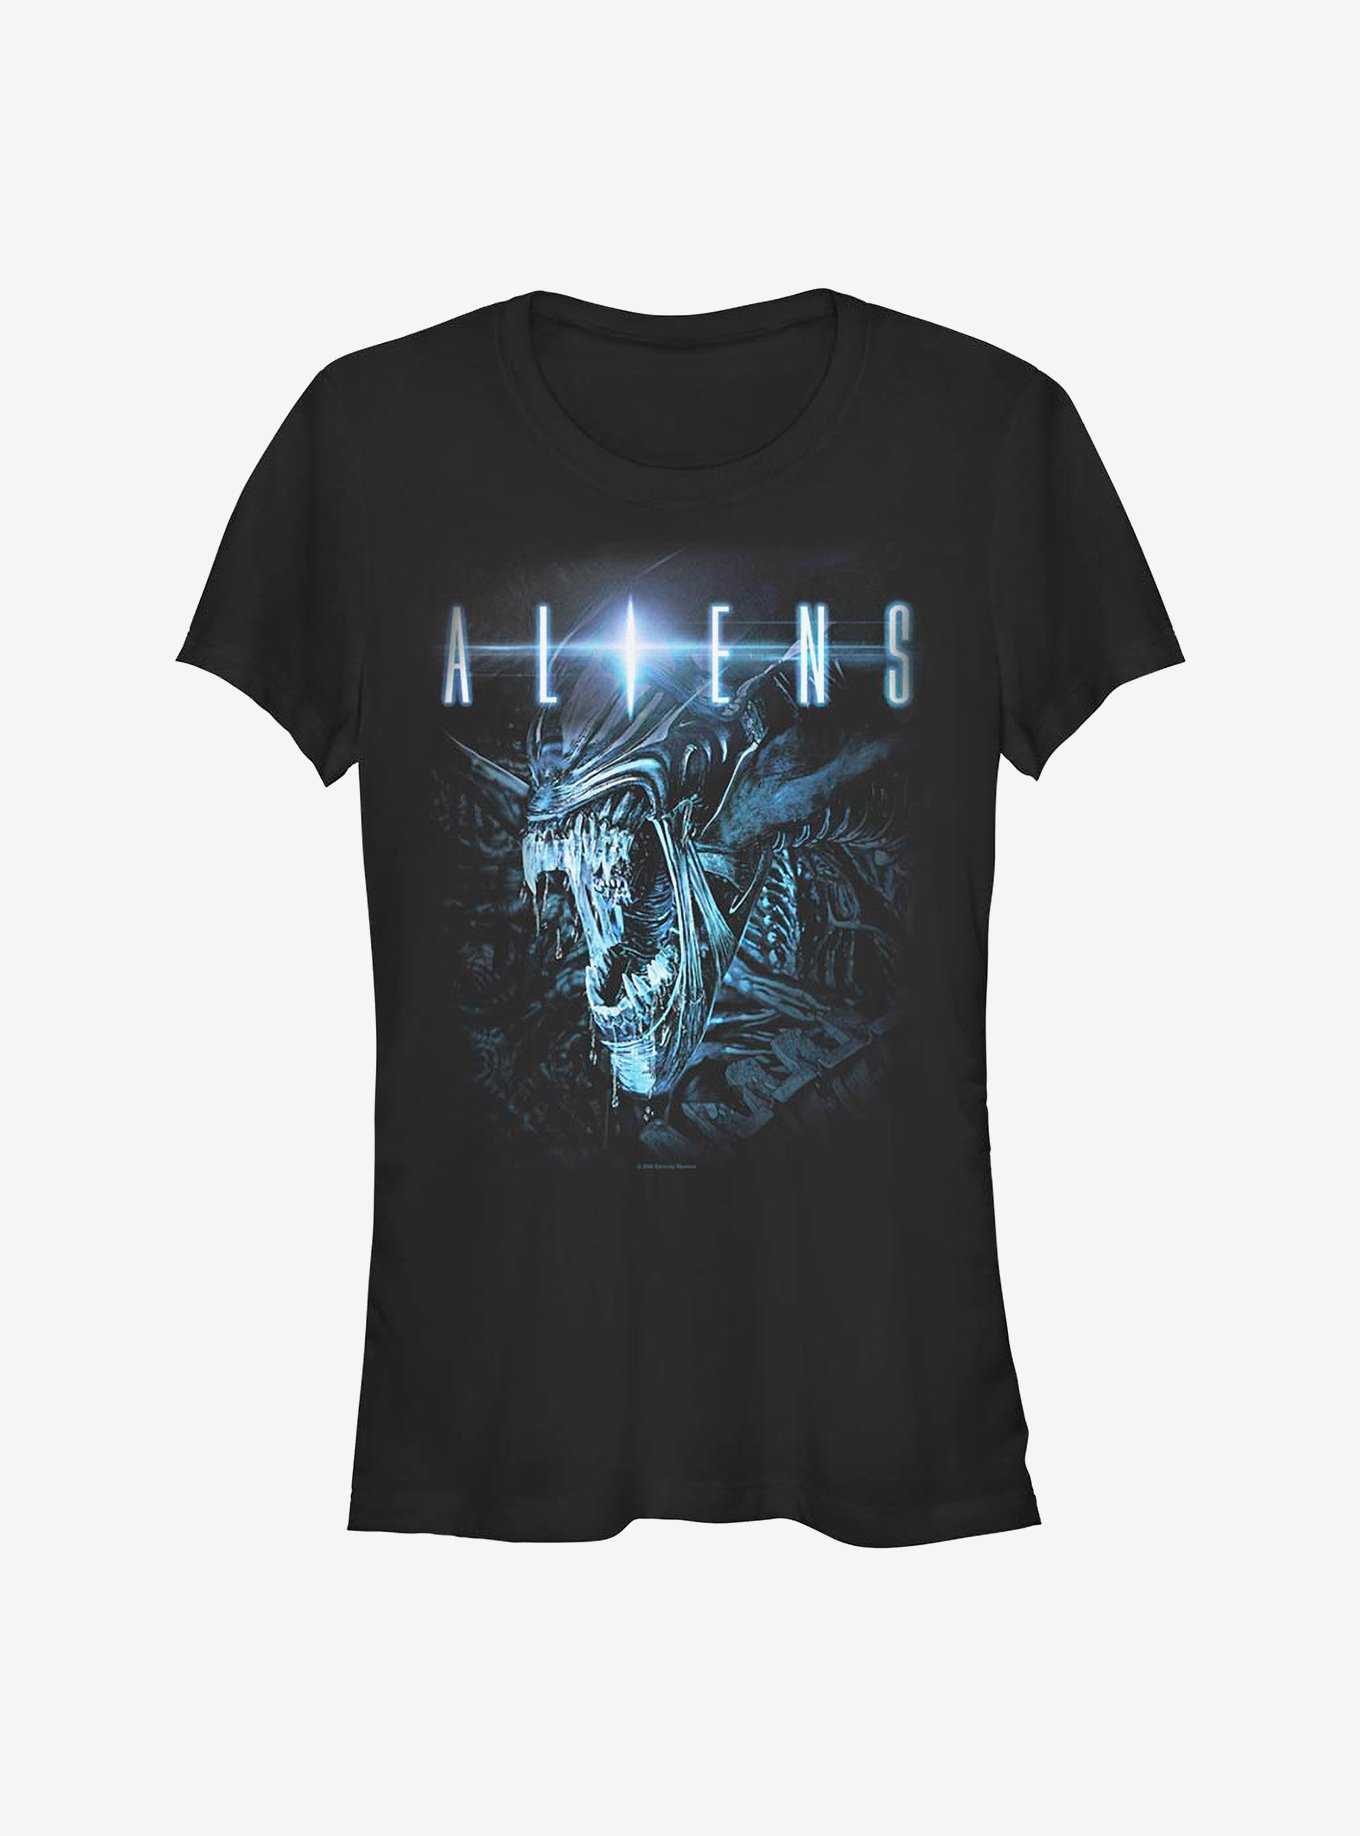 Aliens Queen Alien Girls T-Shirt, , hi-res